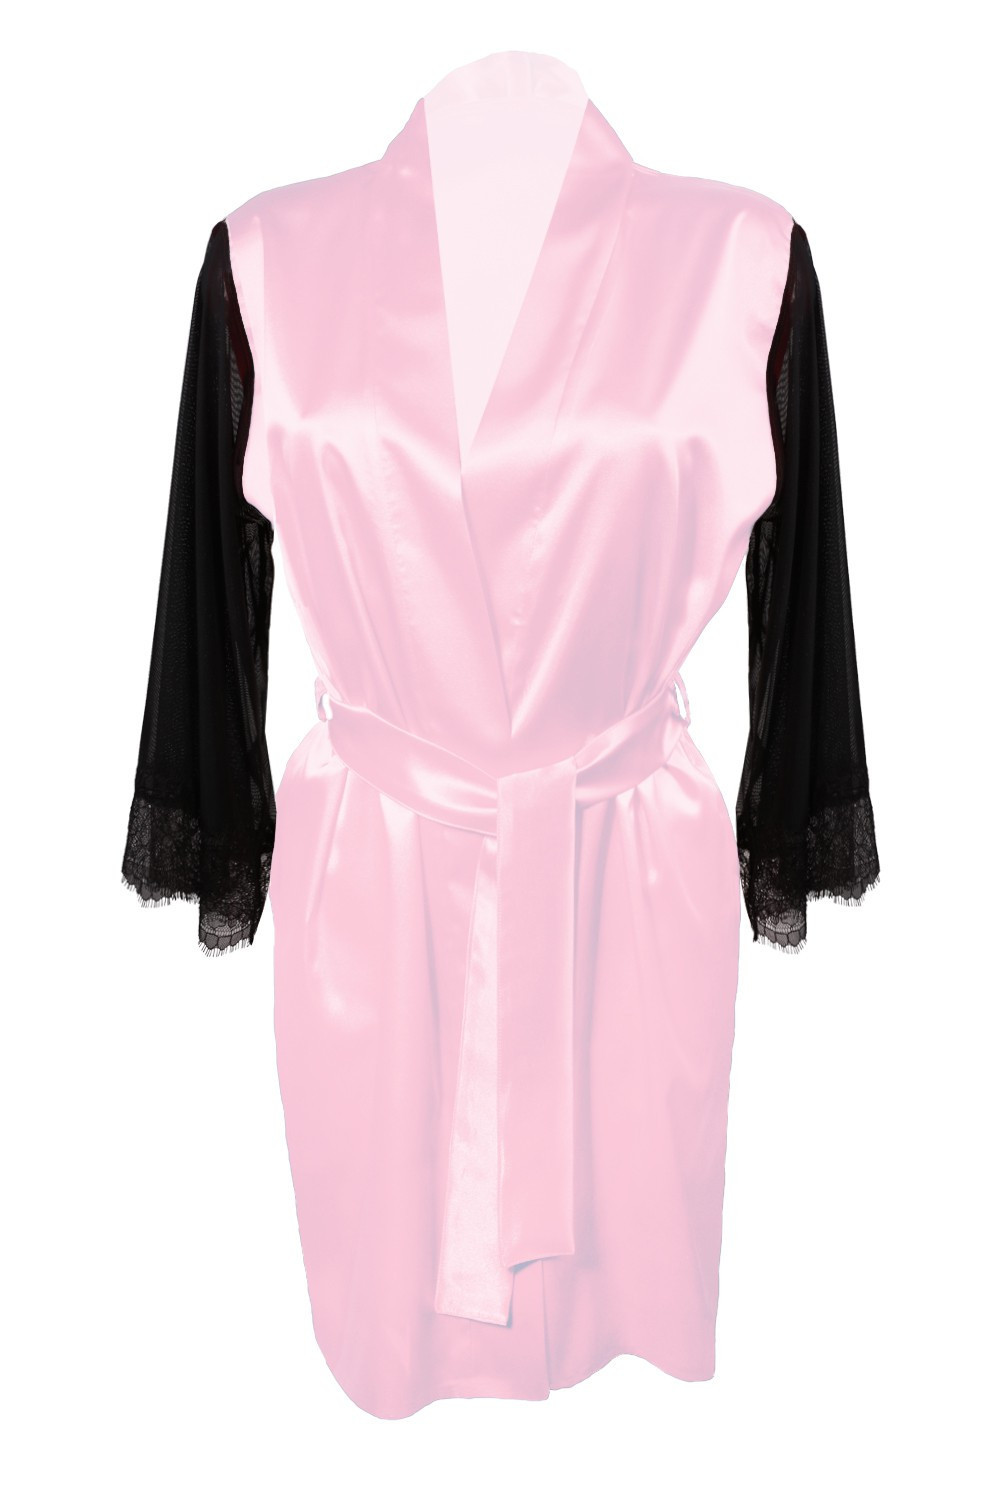 Housecoat model 18227289 Pink L Pink - DKaren